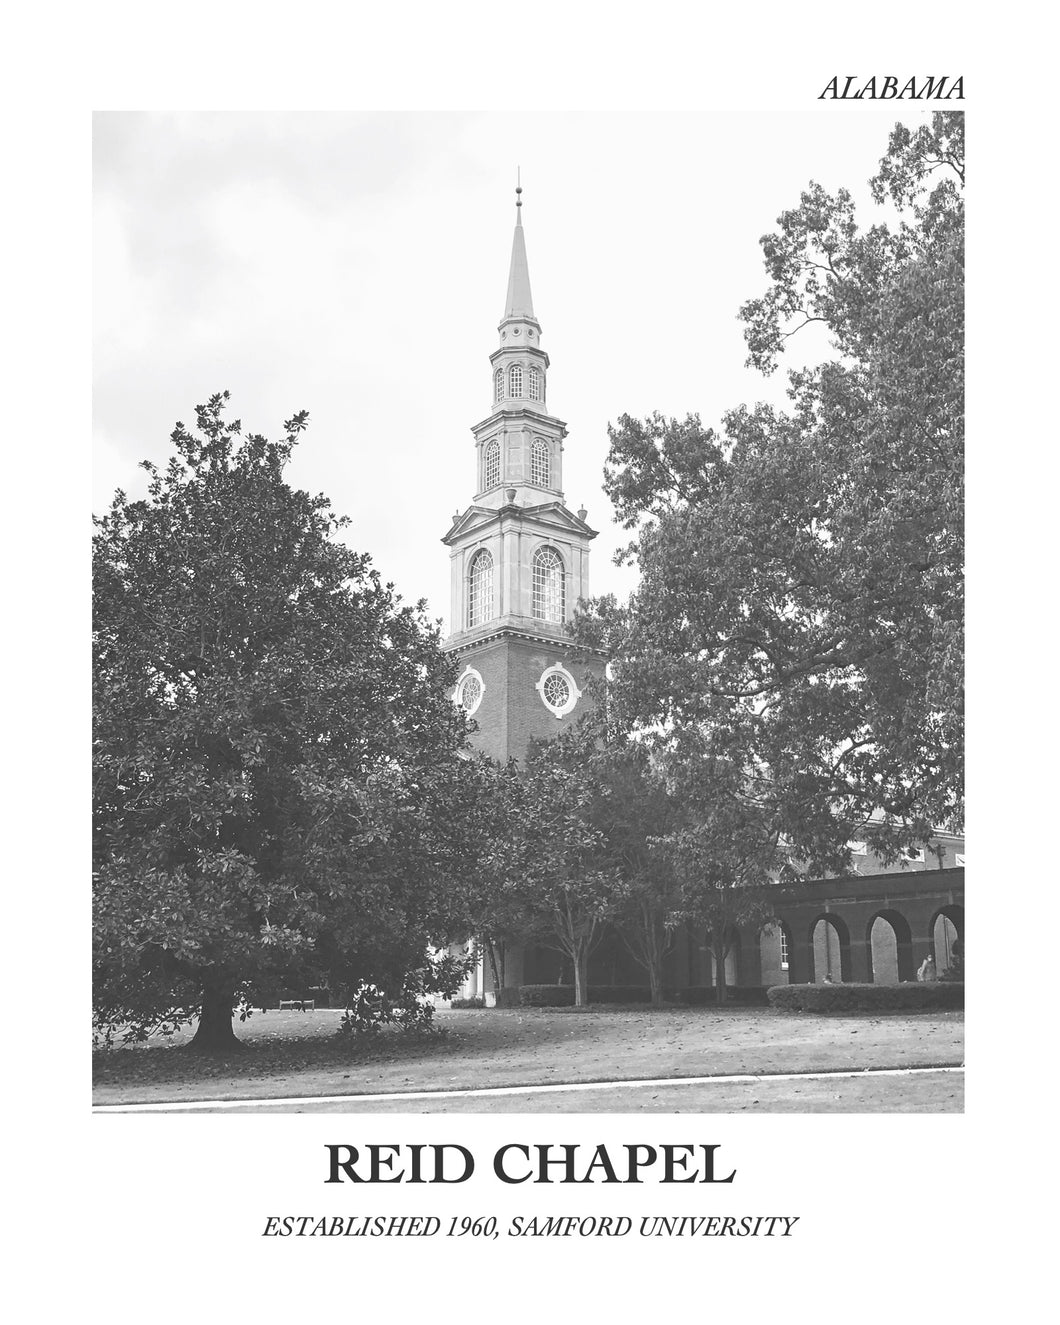 Reid Chapel